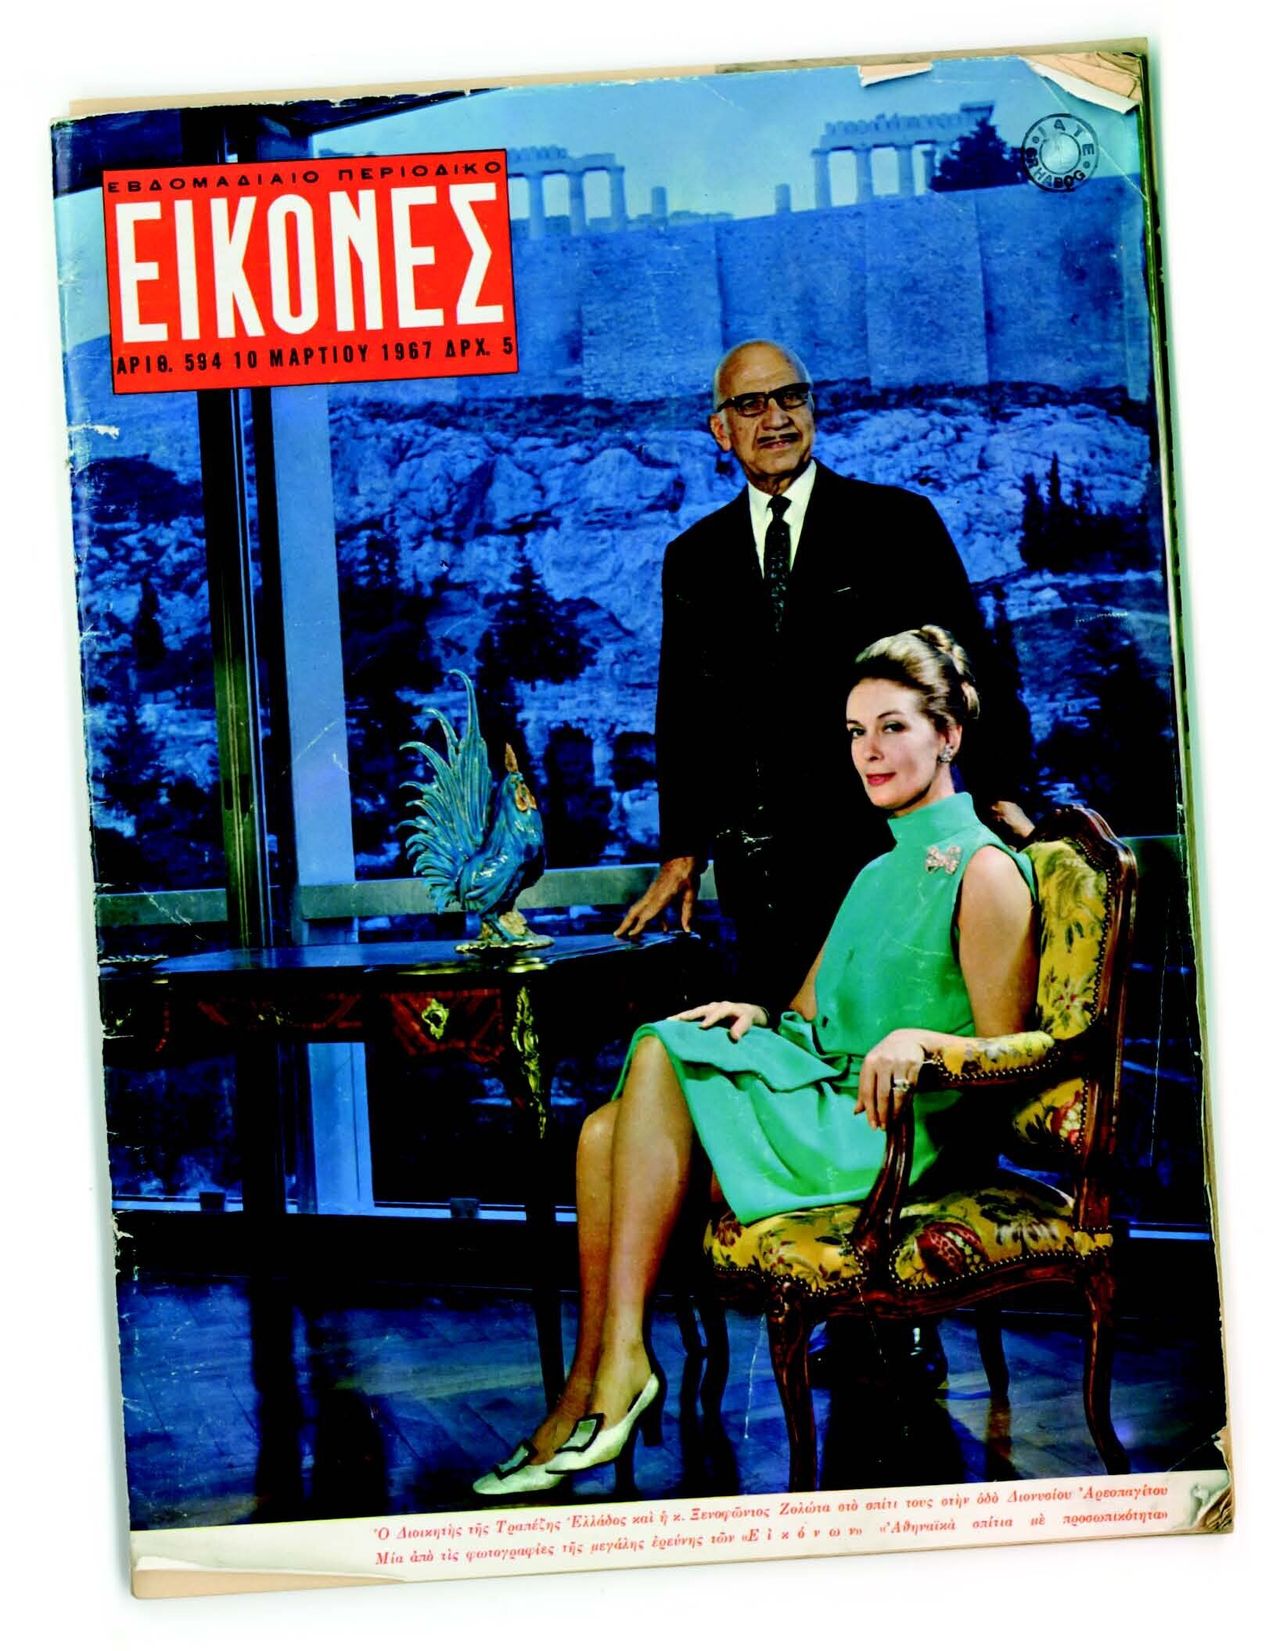 Εξώφυλλο του εβδομαδιαίου περιοδικού Εικόνες με τον Ξενοφώντα Ζολώτα και τη σύζυγό του στην κατοικία τους, 10.3.1967. 